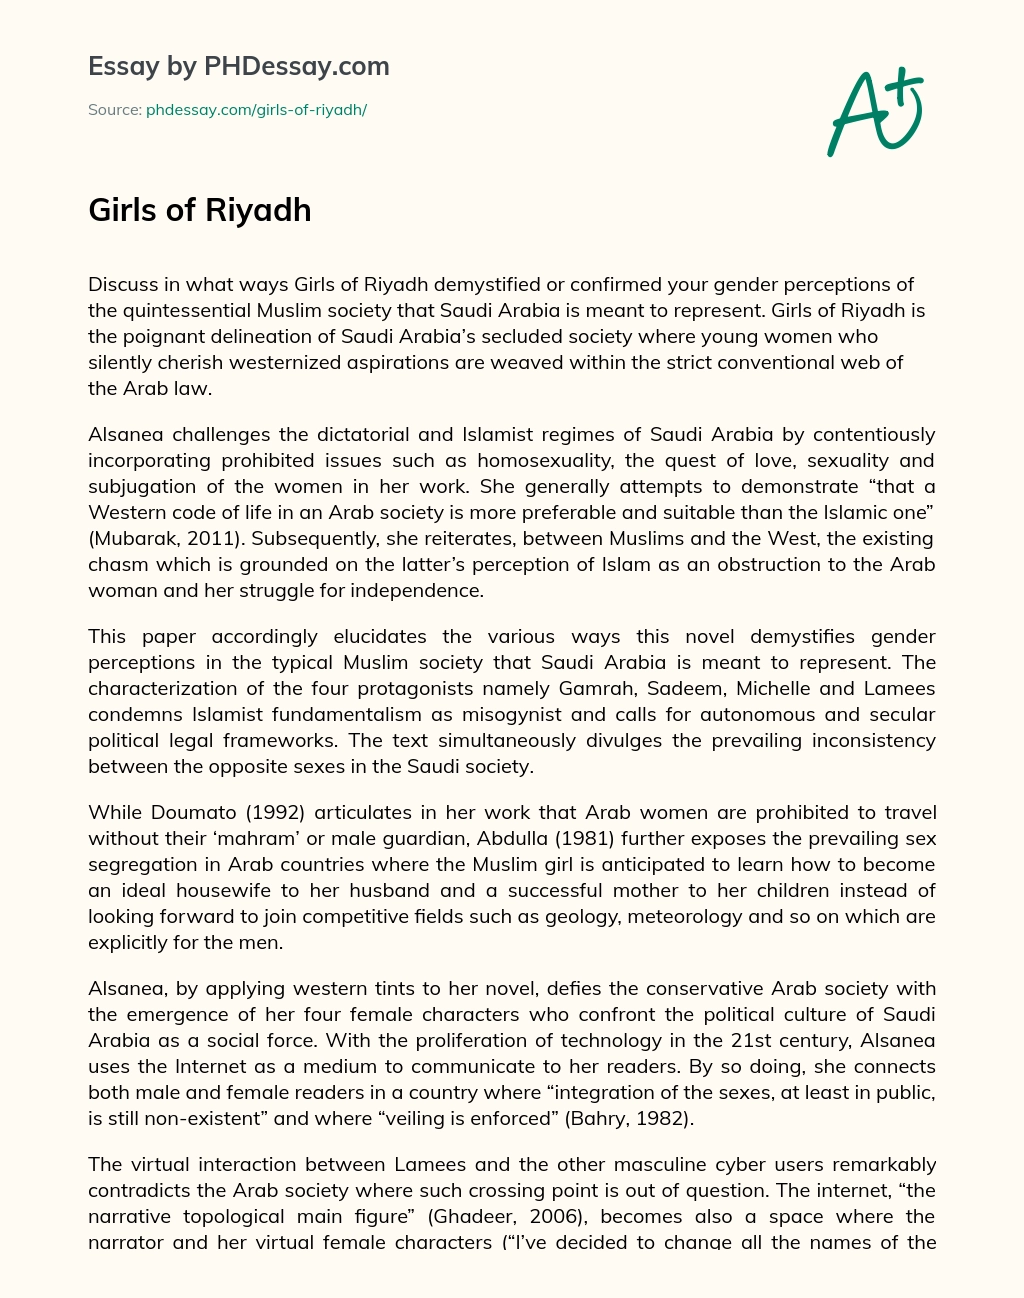 Girls of Riyadh essay